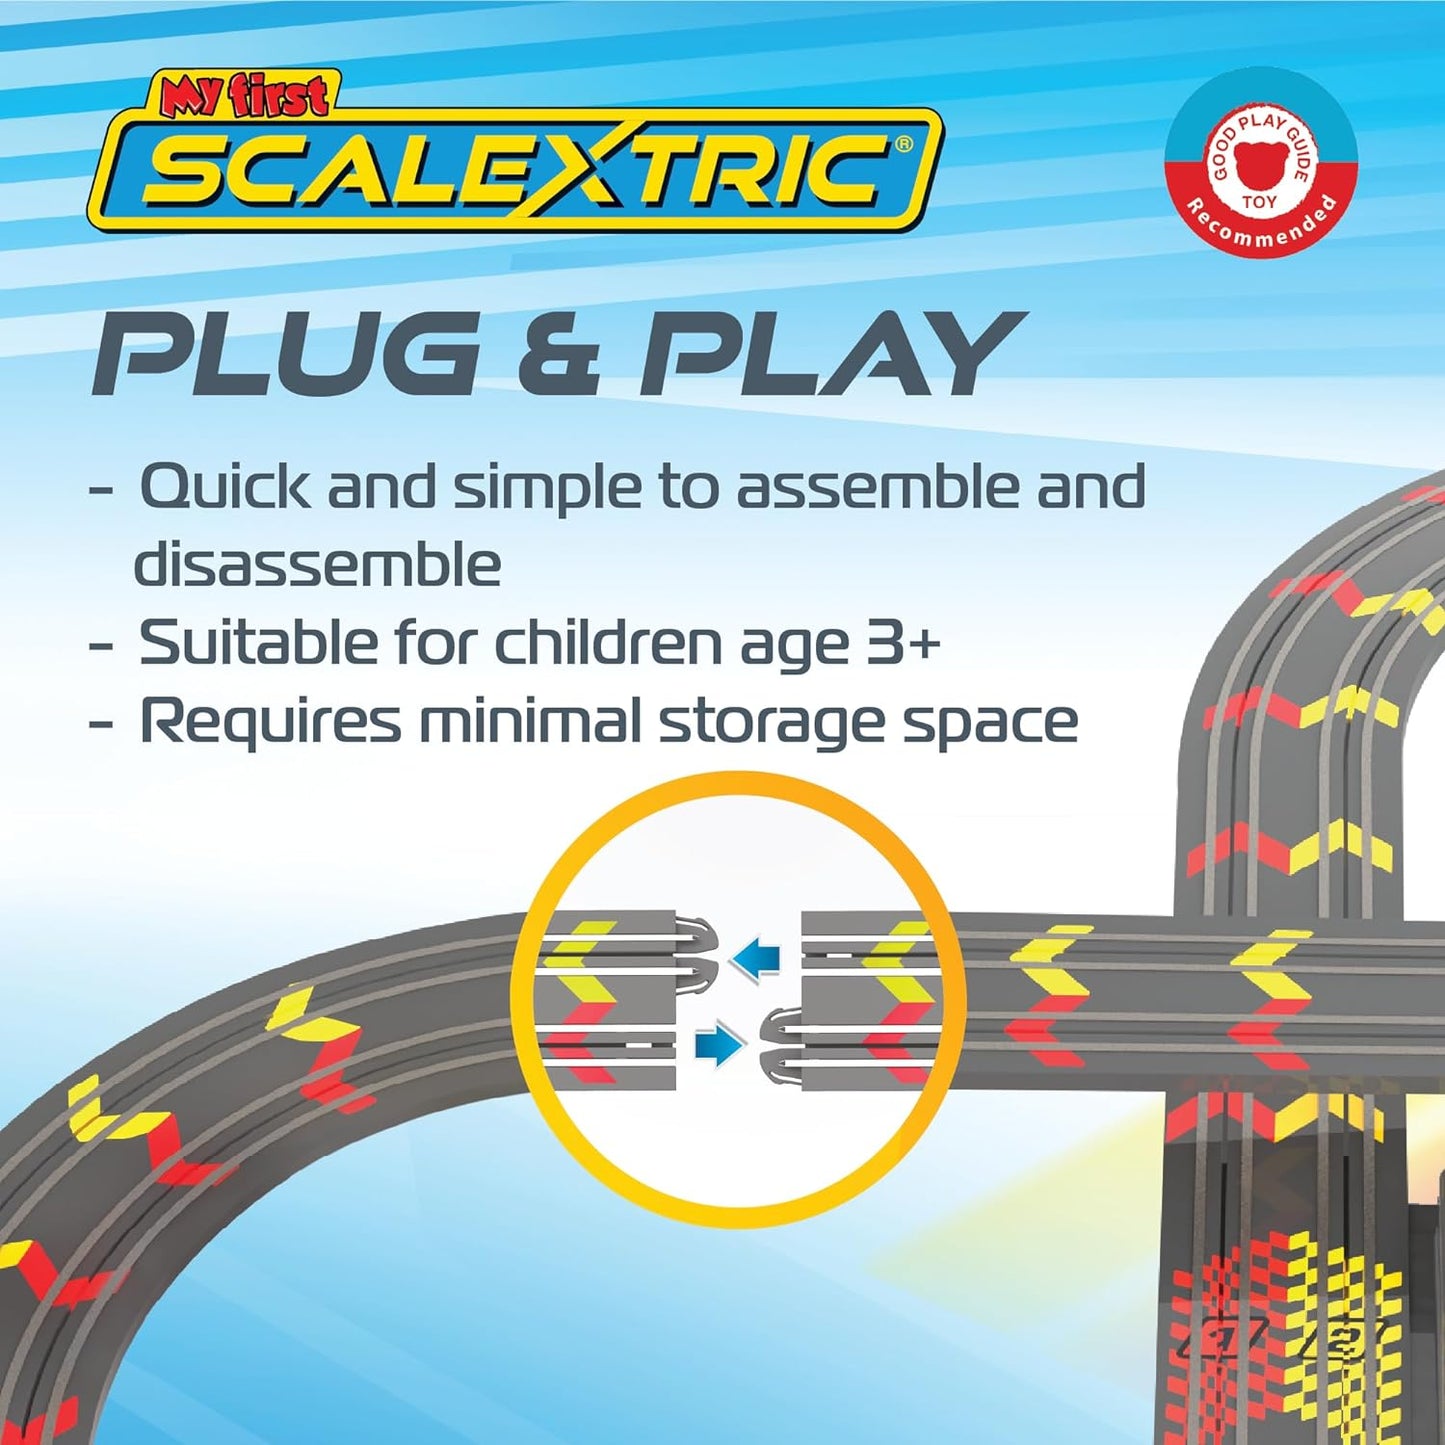 Scalextric My First - Conjuntos de corrida movidos a bateria - Pistas de corrida de Slot Car para crianças de 3 anos ou mais, inclui 1 conjunto de pistas, 1 carro vermelho, 1 carro amarelo, 1 base de bateria, 2 controladores de limite de velocidade